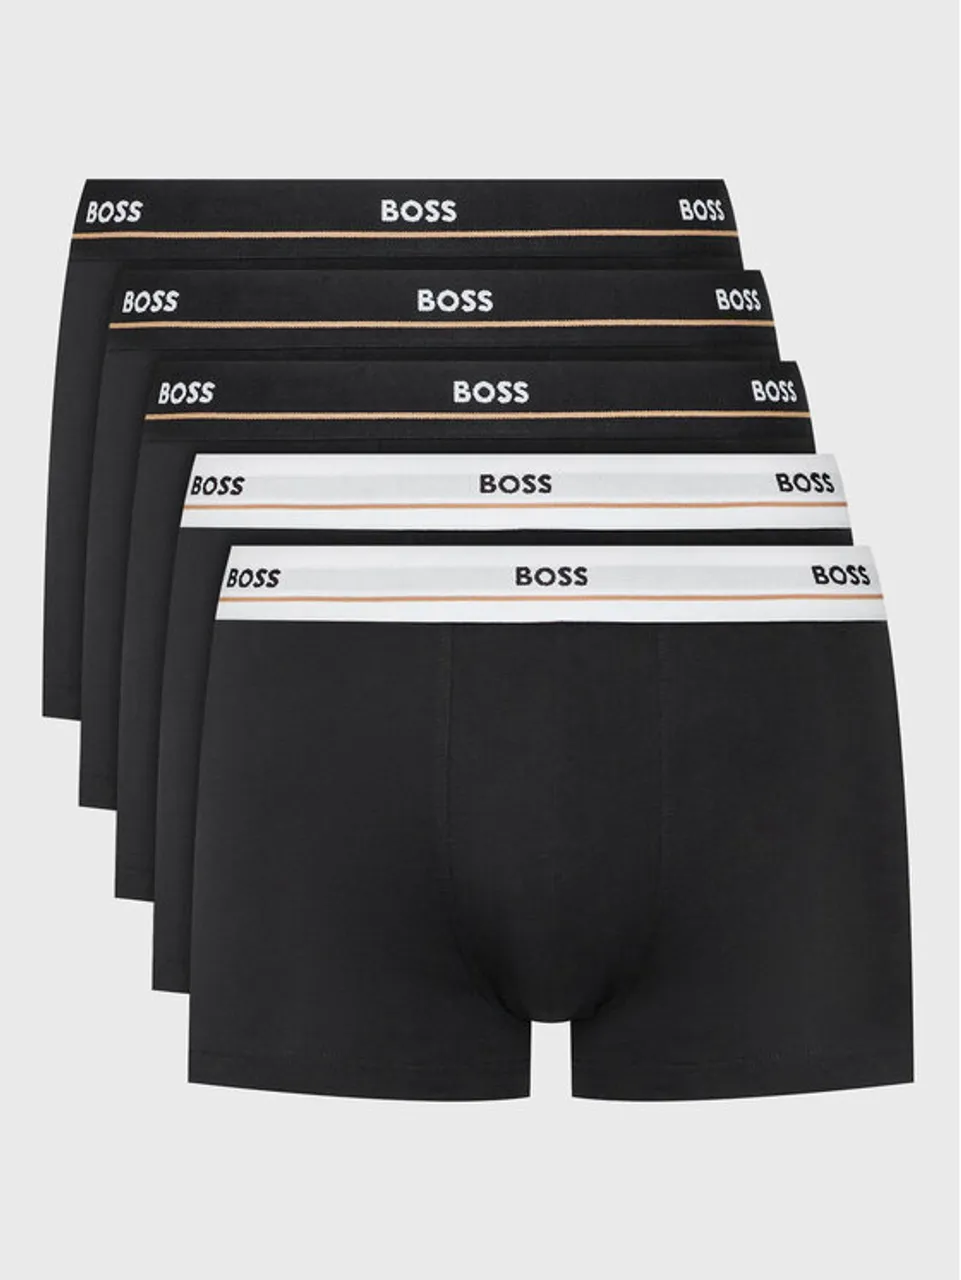 Boss 5er-Set Boxershorts Essential 50475275 Schwarz